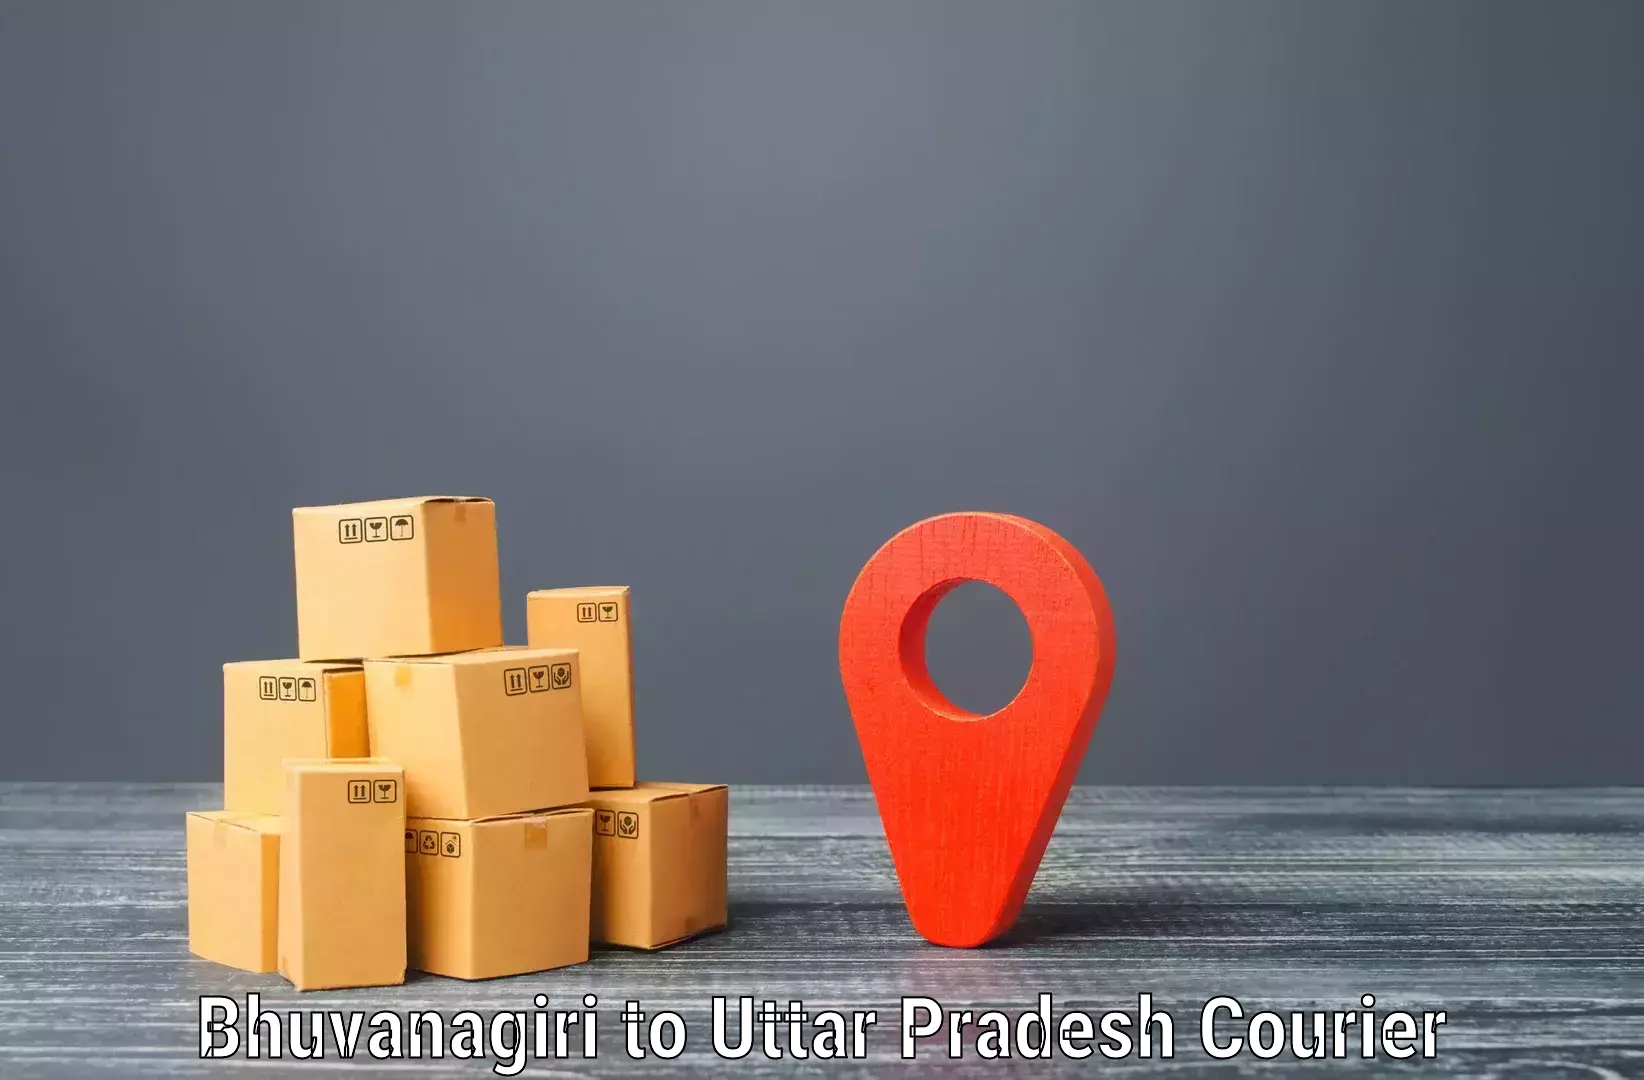 Logistics service provider Bhuvanagiri to Vrindavan